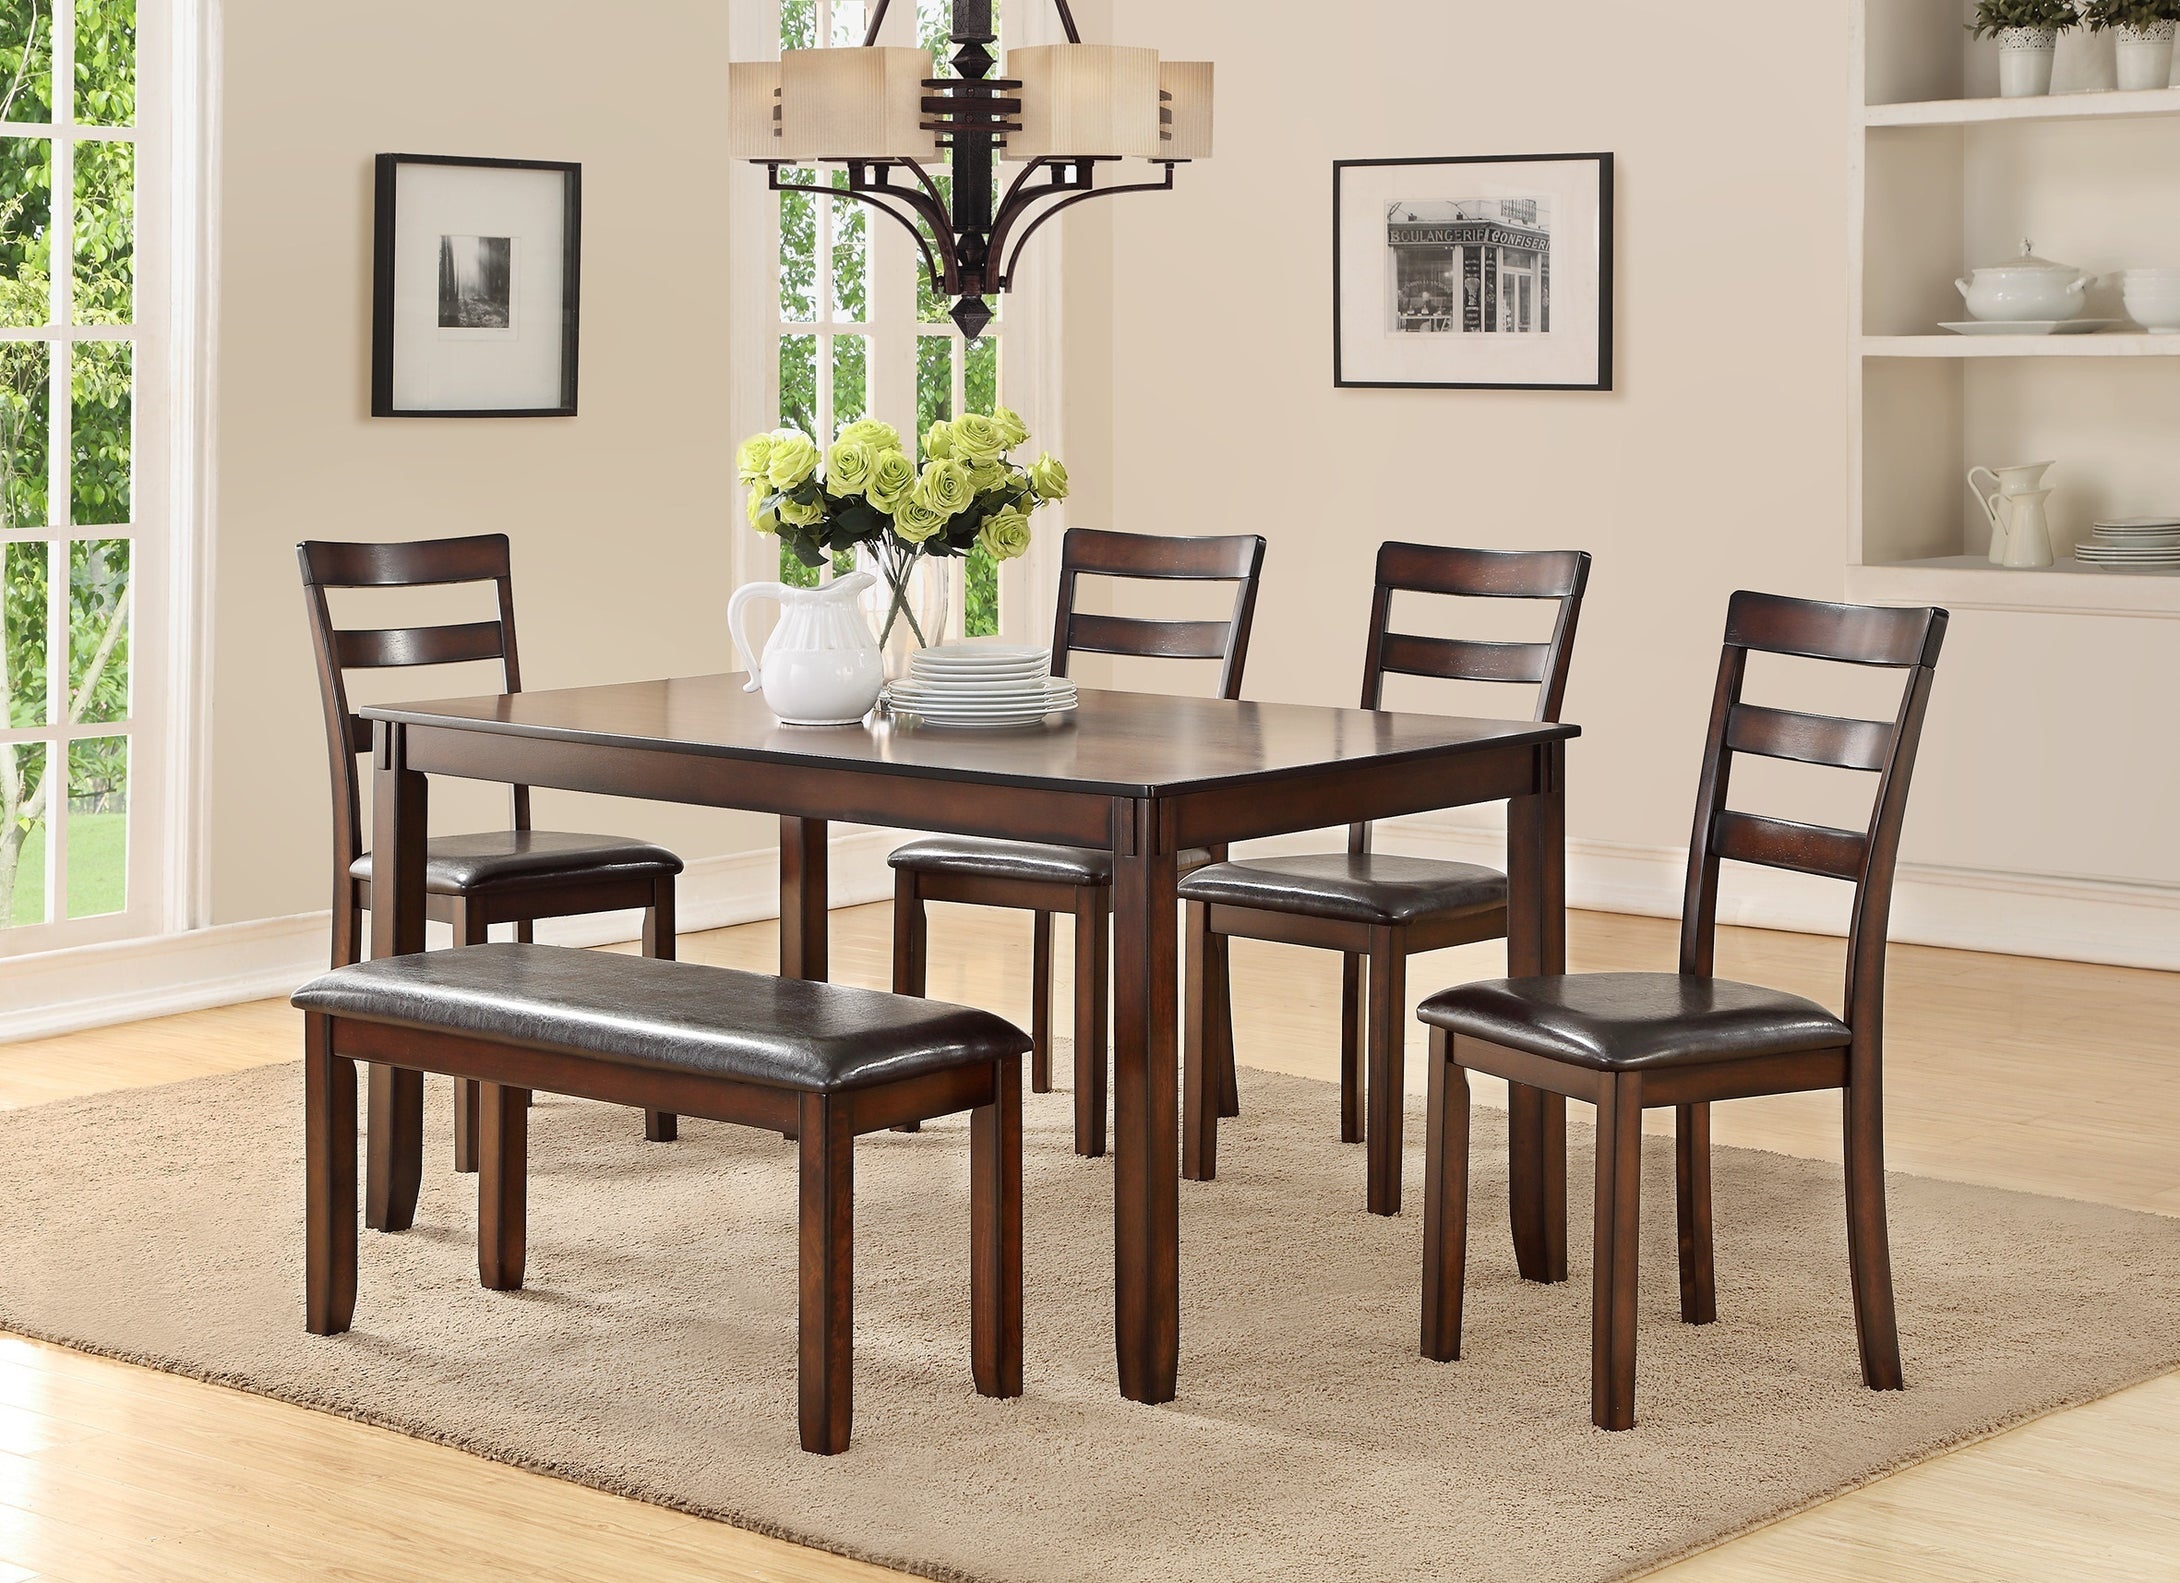 Juego clásico de muebles de comedor con mesa rectangular de 6 piezas, 4 sillas laterales y banco